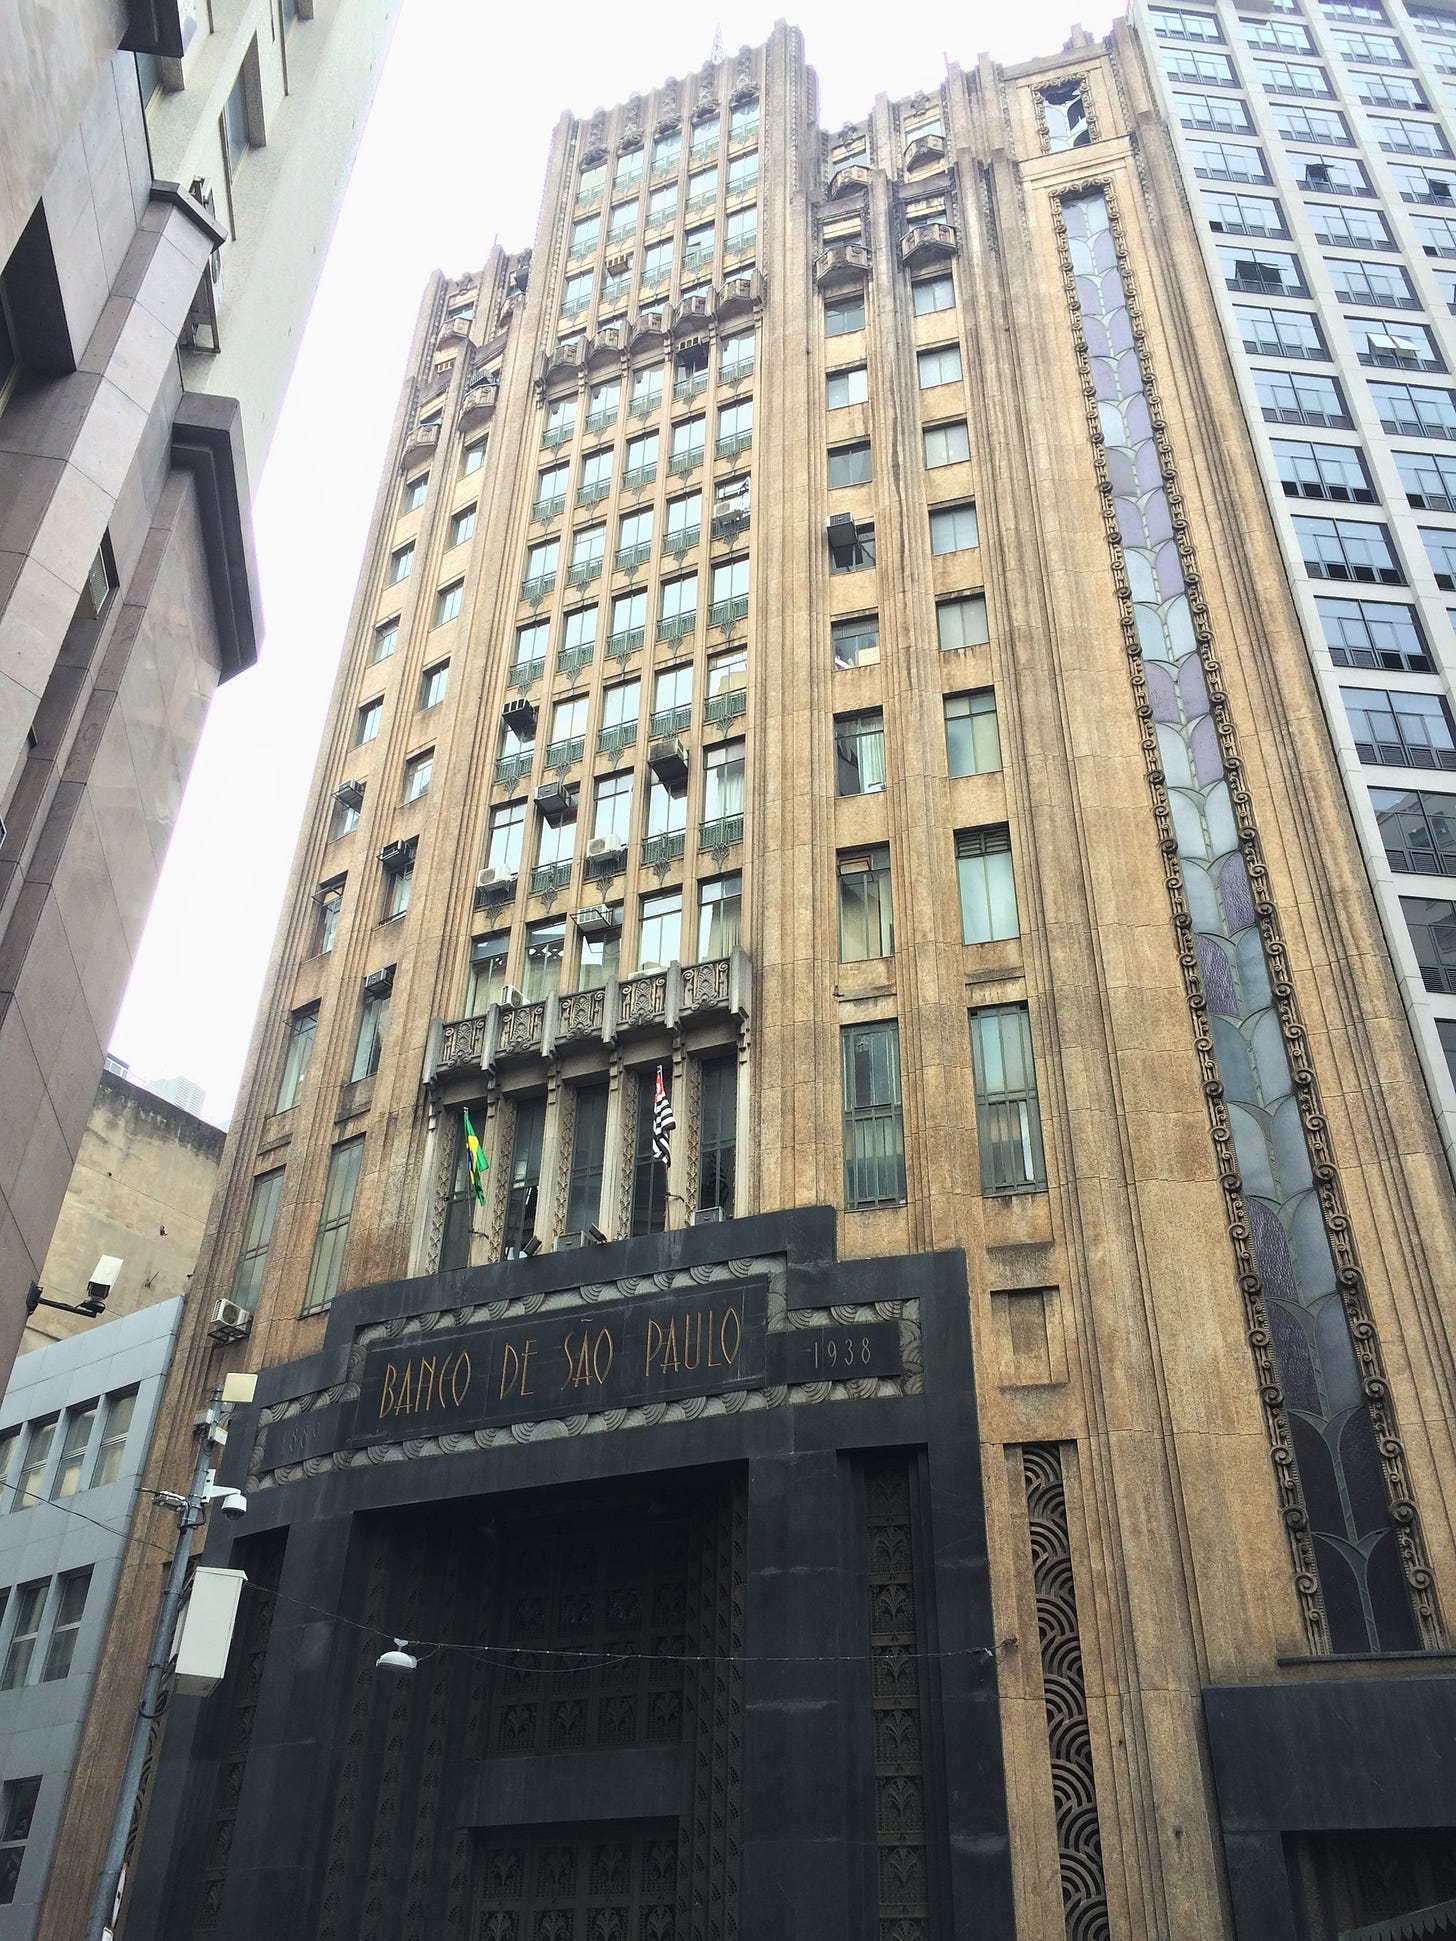 Fachada do Edifício Banco de São Paulo, finalizado em 1938. Foto de J. Miozzo.